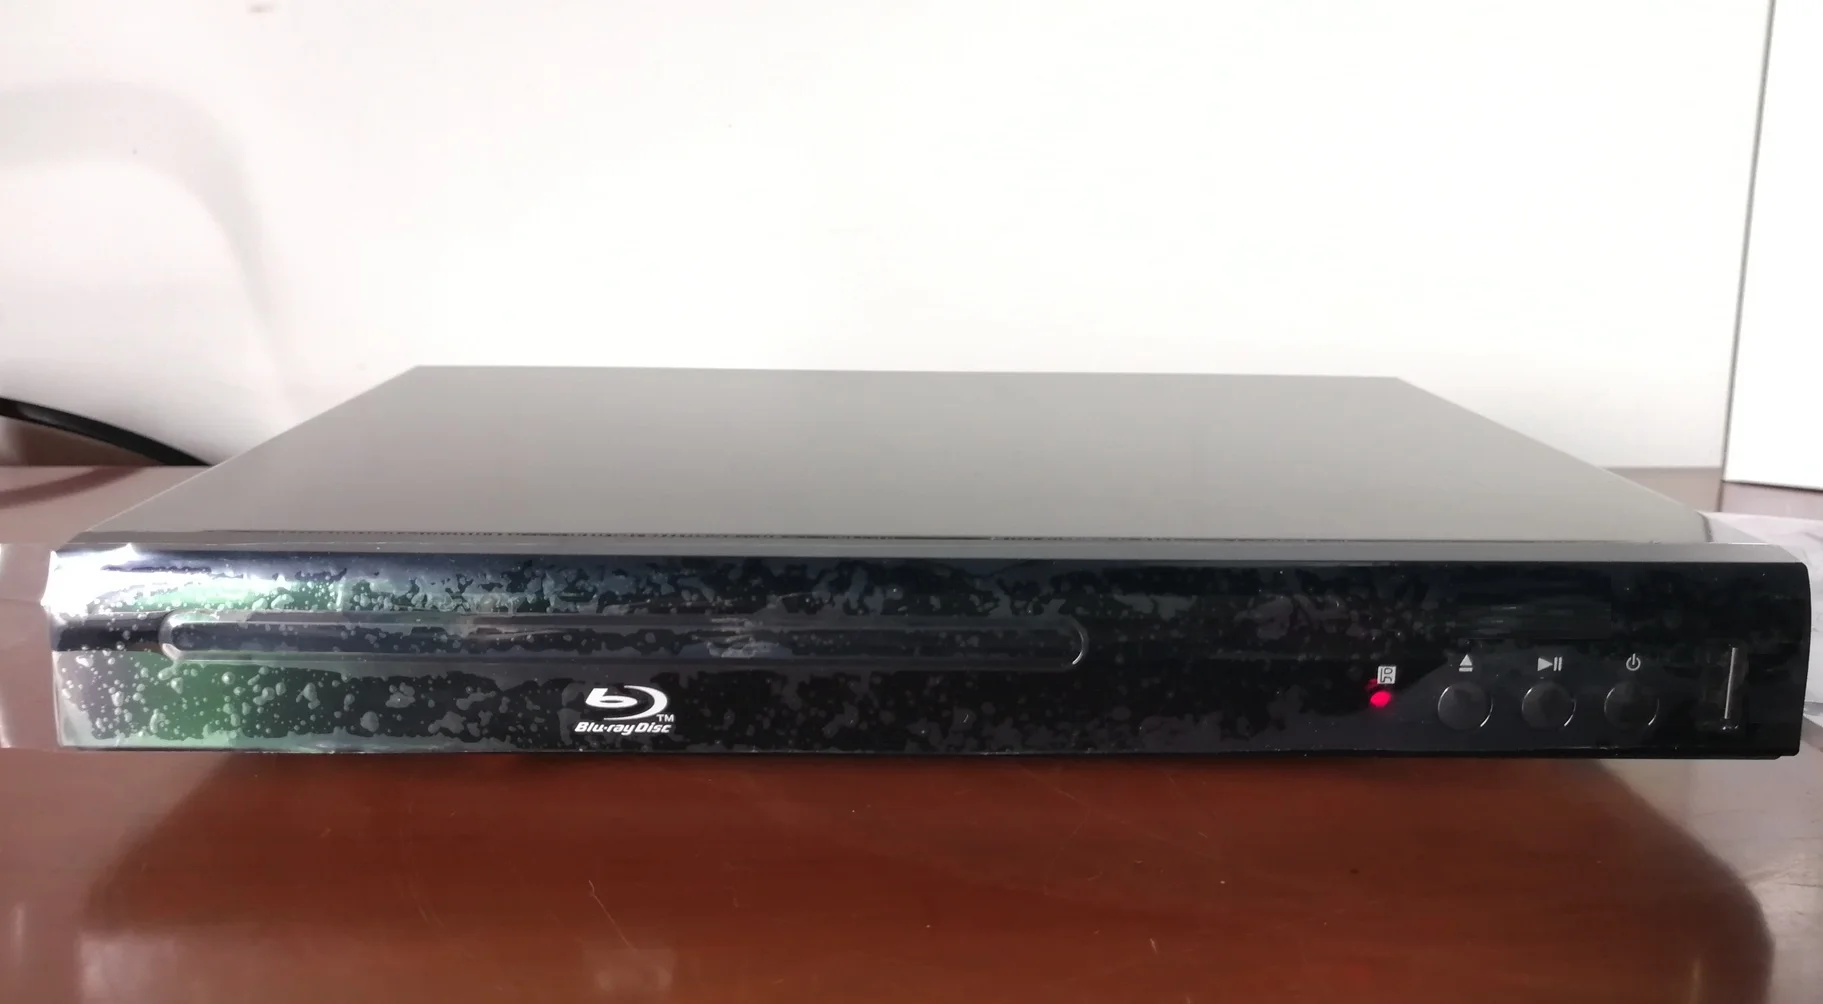 Mini lecteur dvd blue ray, pour usage domestique - AliExpress